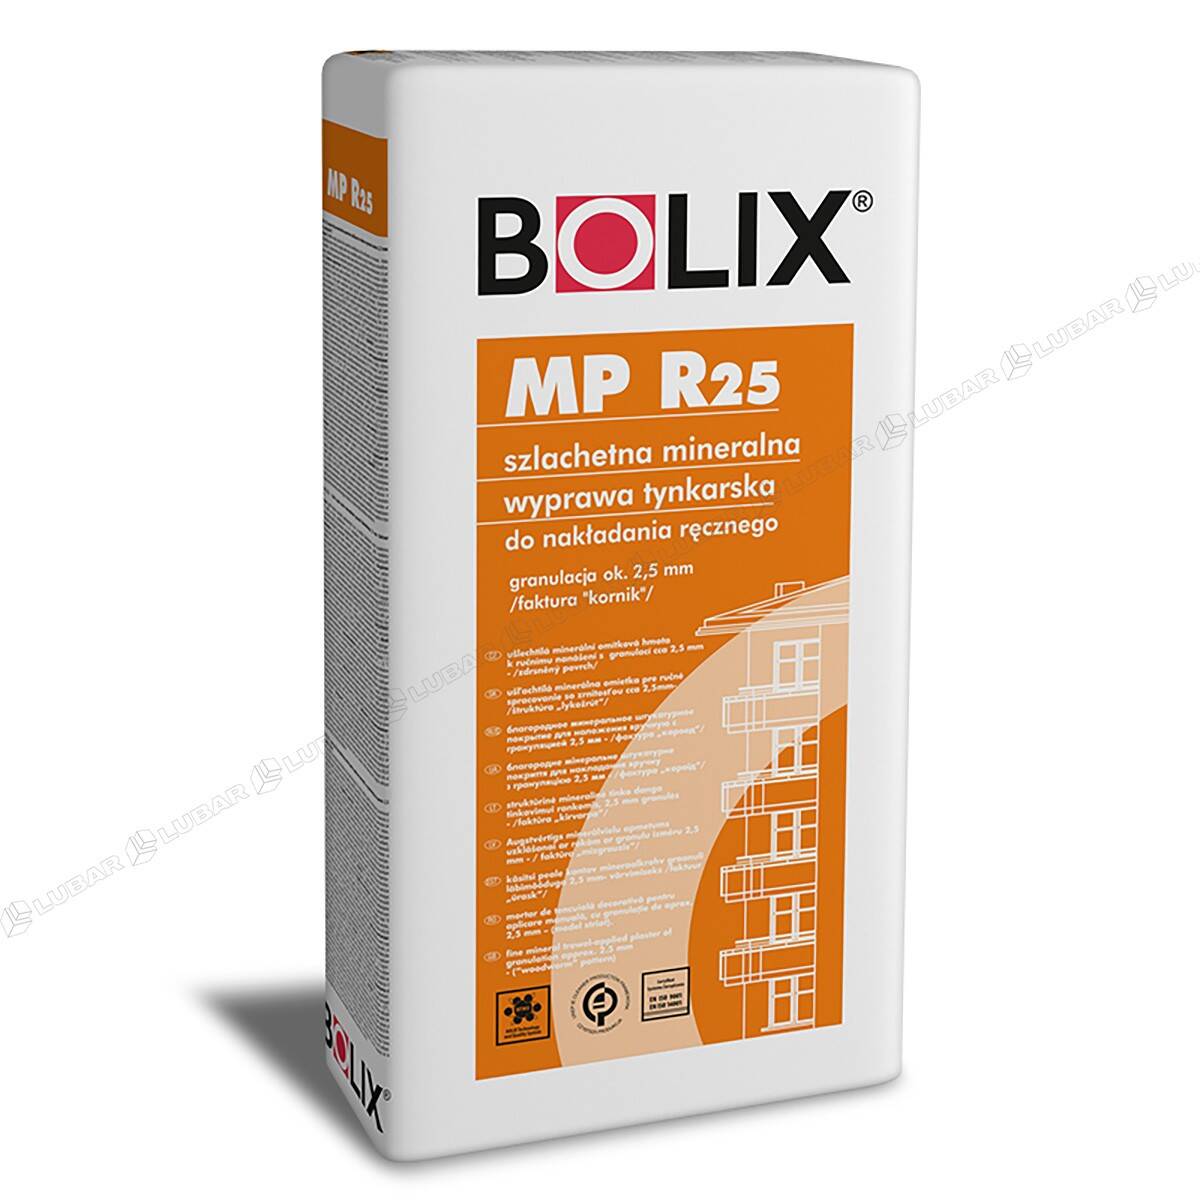 BOLIX MP R 25 Tynk mineralny cienkowarstwowy kornik 25 kg